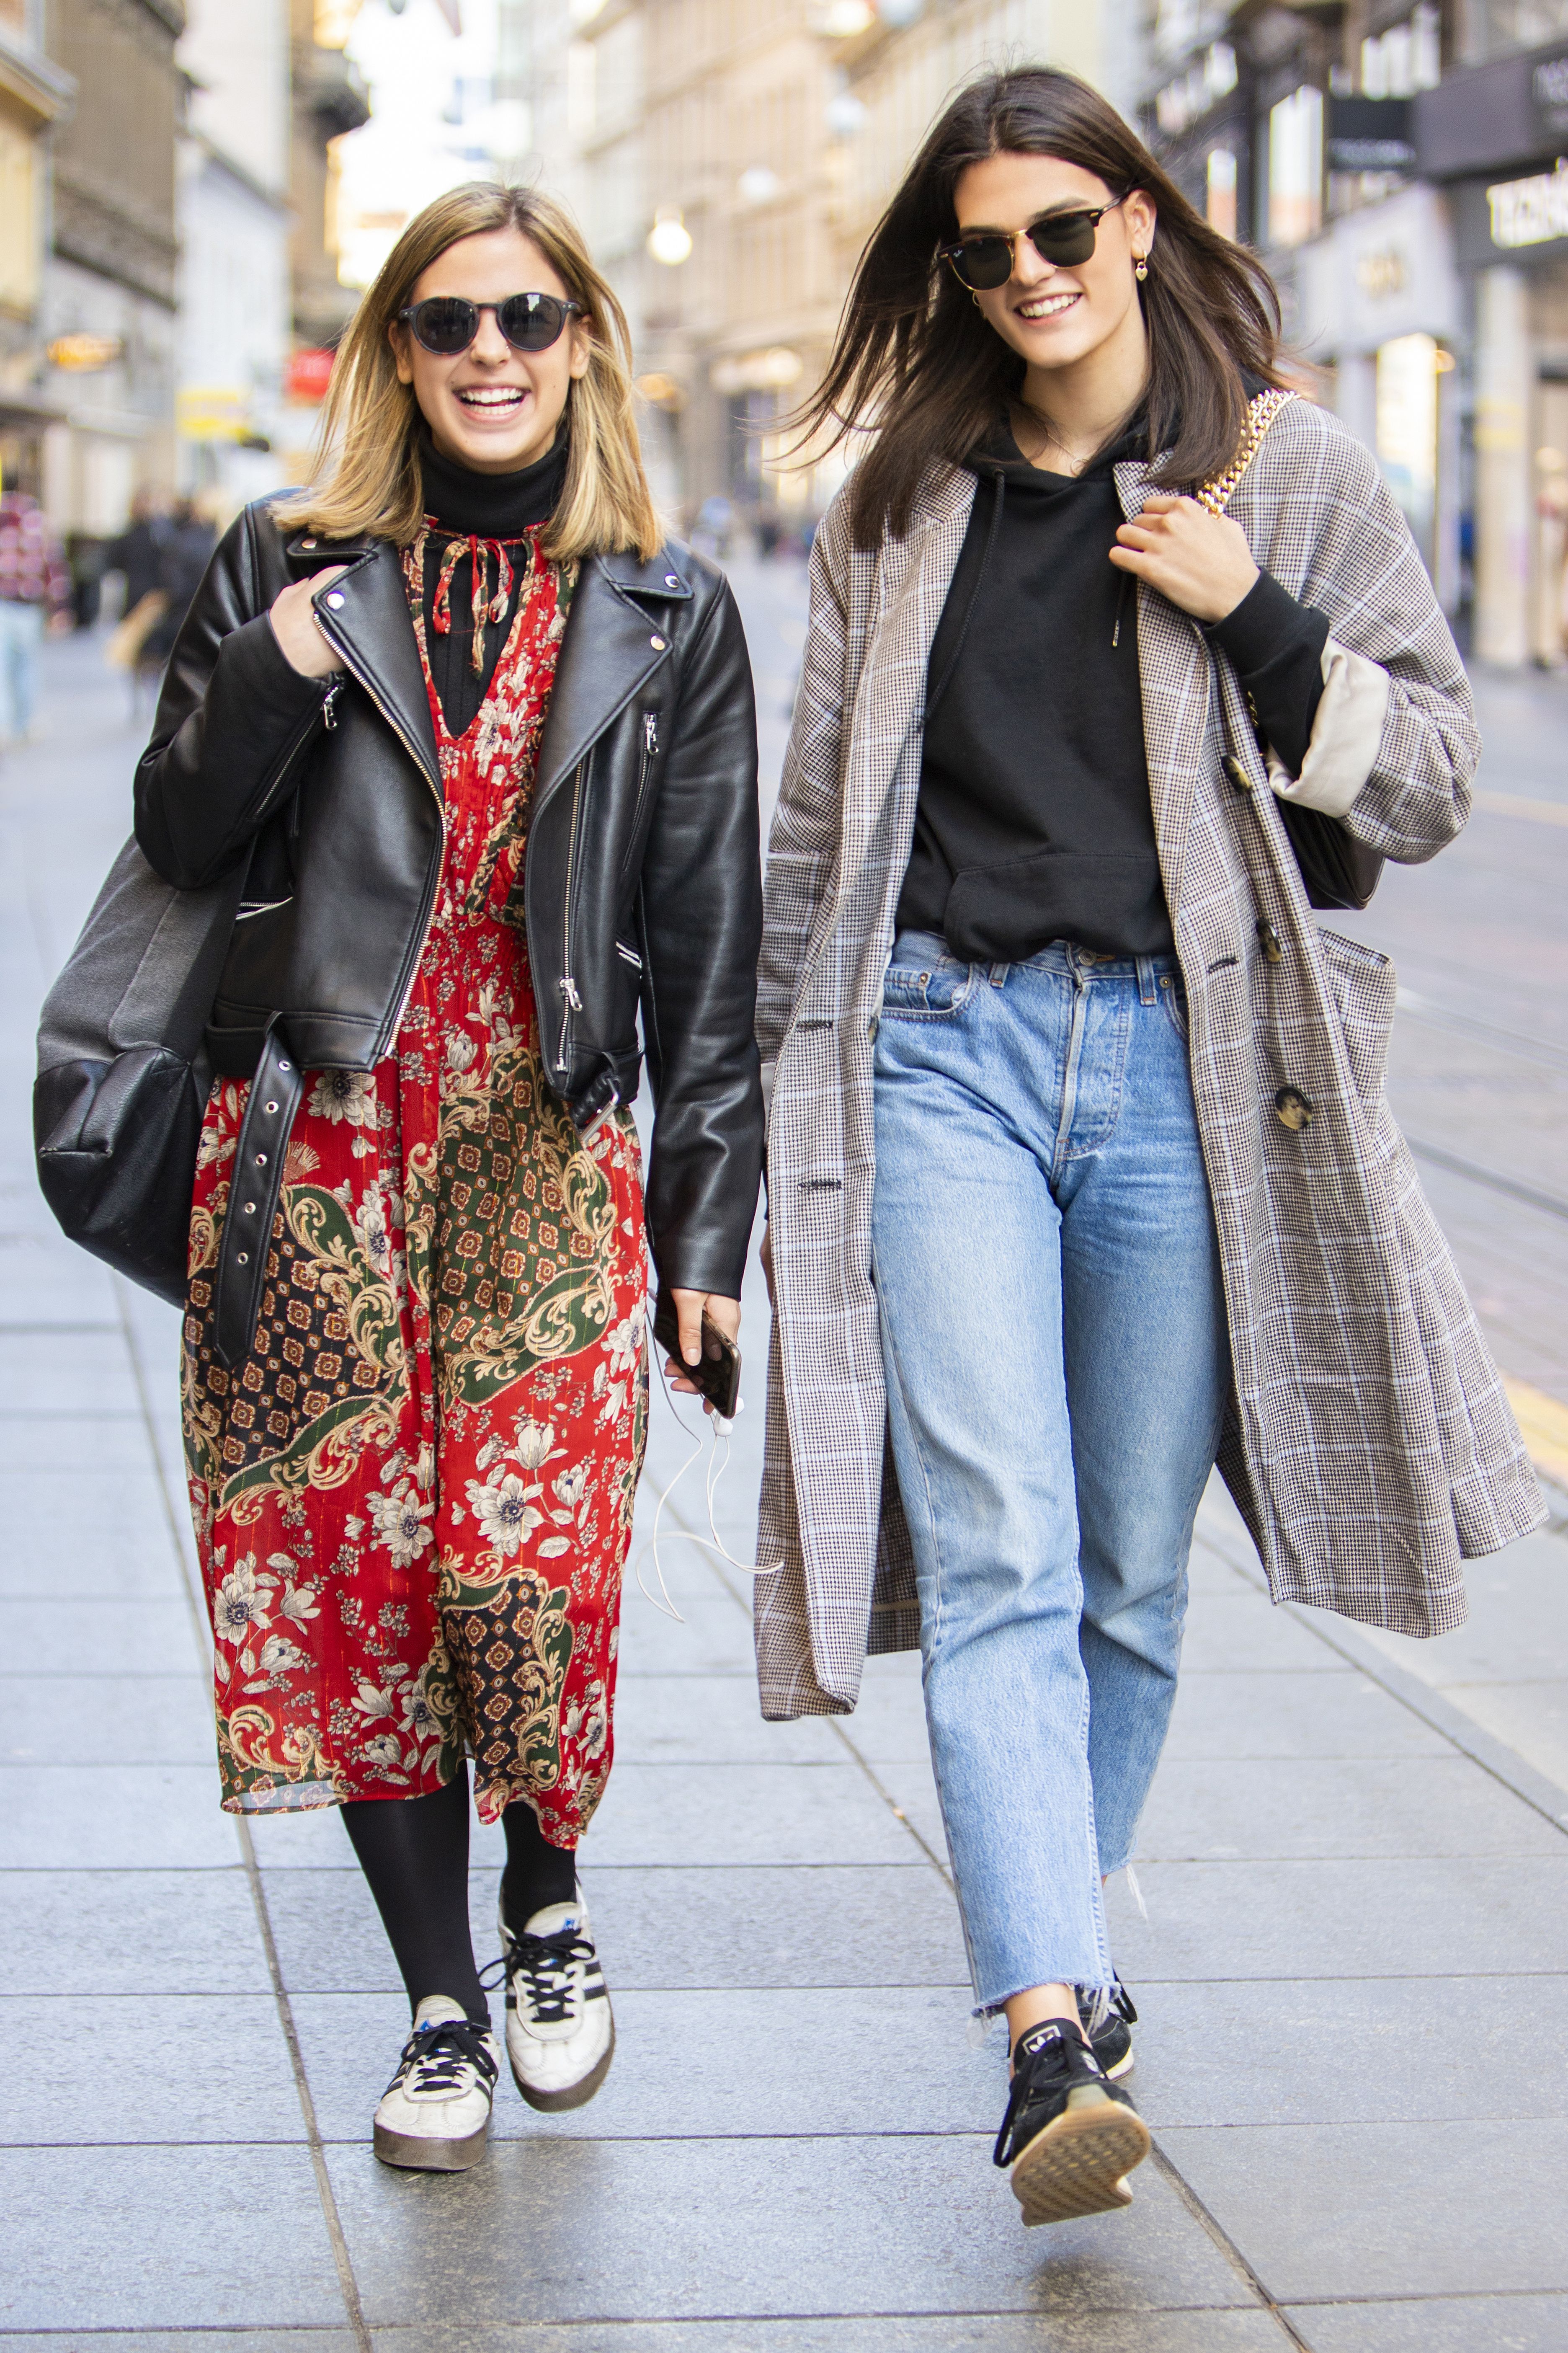 Ove blizanke dijele odjeću: 'Često se svađamo koja će što obući'